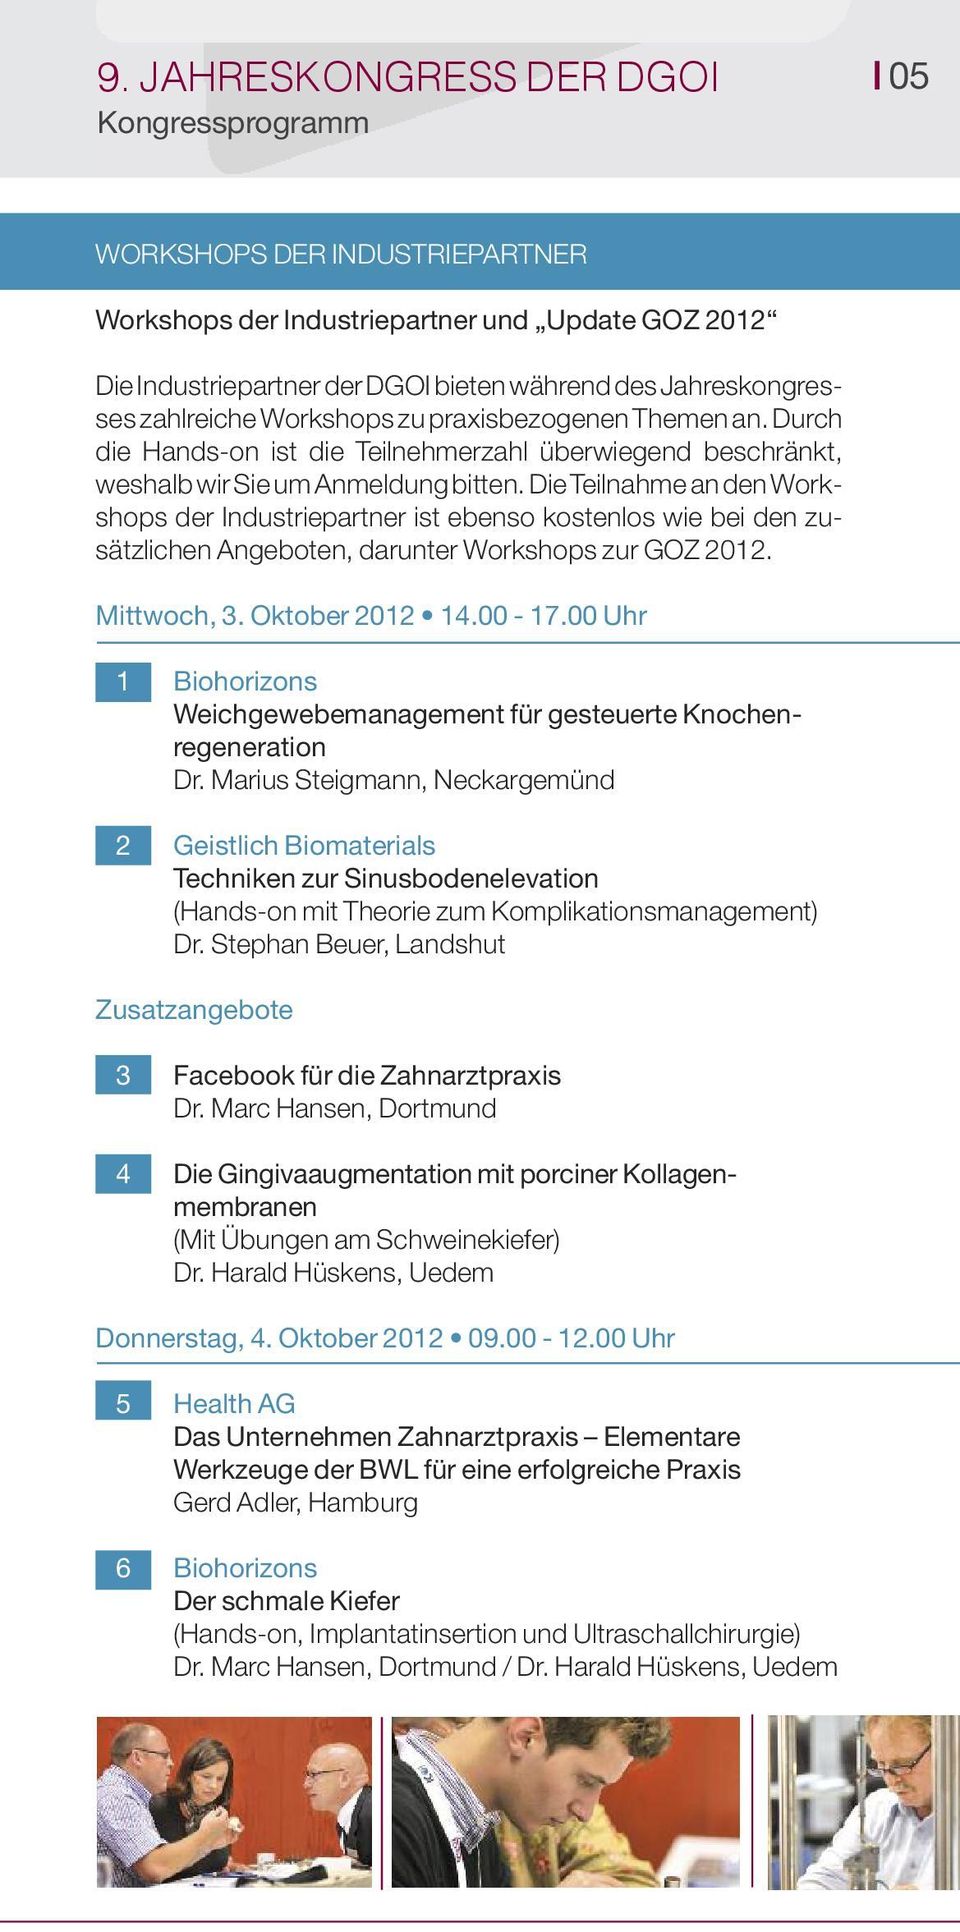 Die Teilnahme an den Workshops der Industriepartner ist ebenso kostenlos wie bei den zusätzlichen Angeboten, darunter Workshops zur GOZ 2012. Mittwoch, 3. Oktober 2012 14.00-17.